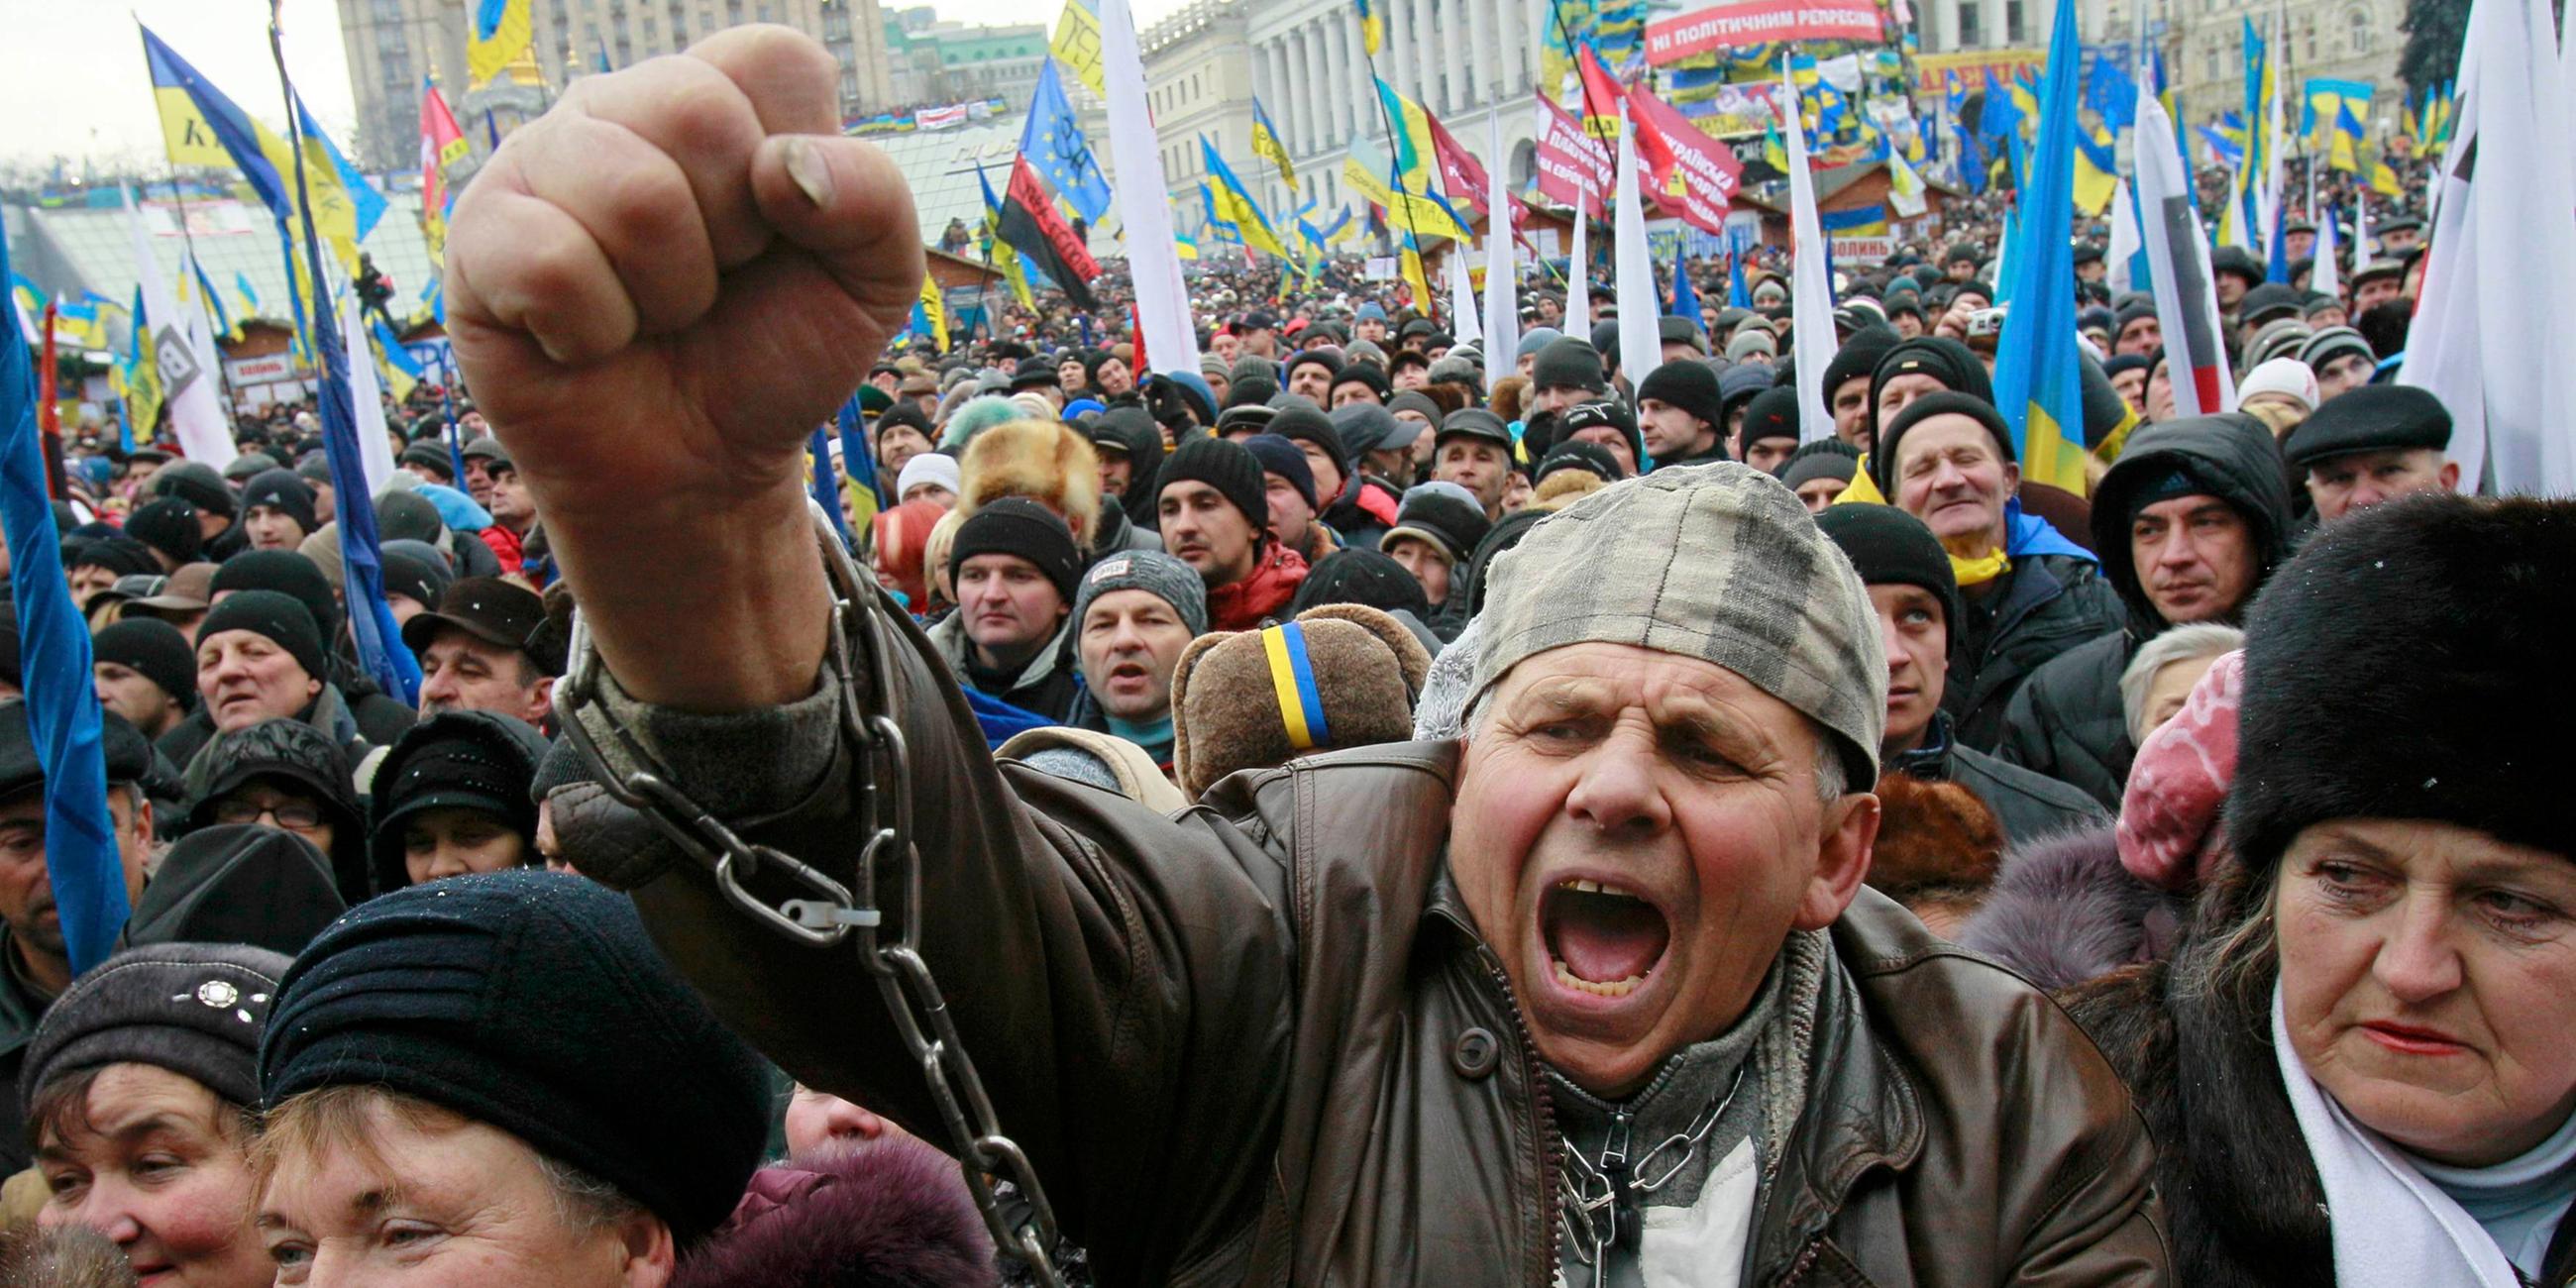 Mann mit Händen in Handschellen bei Demonstration in Kiew